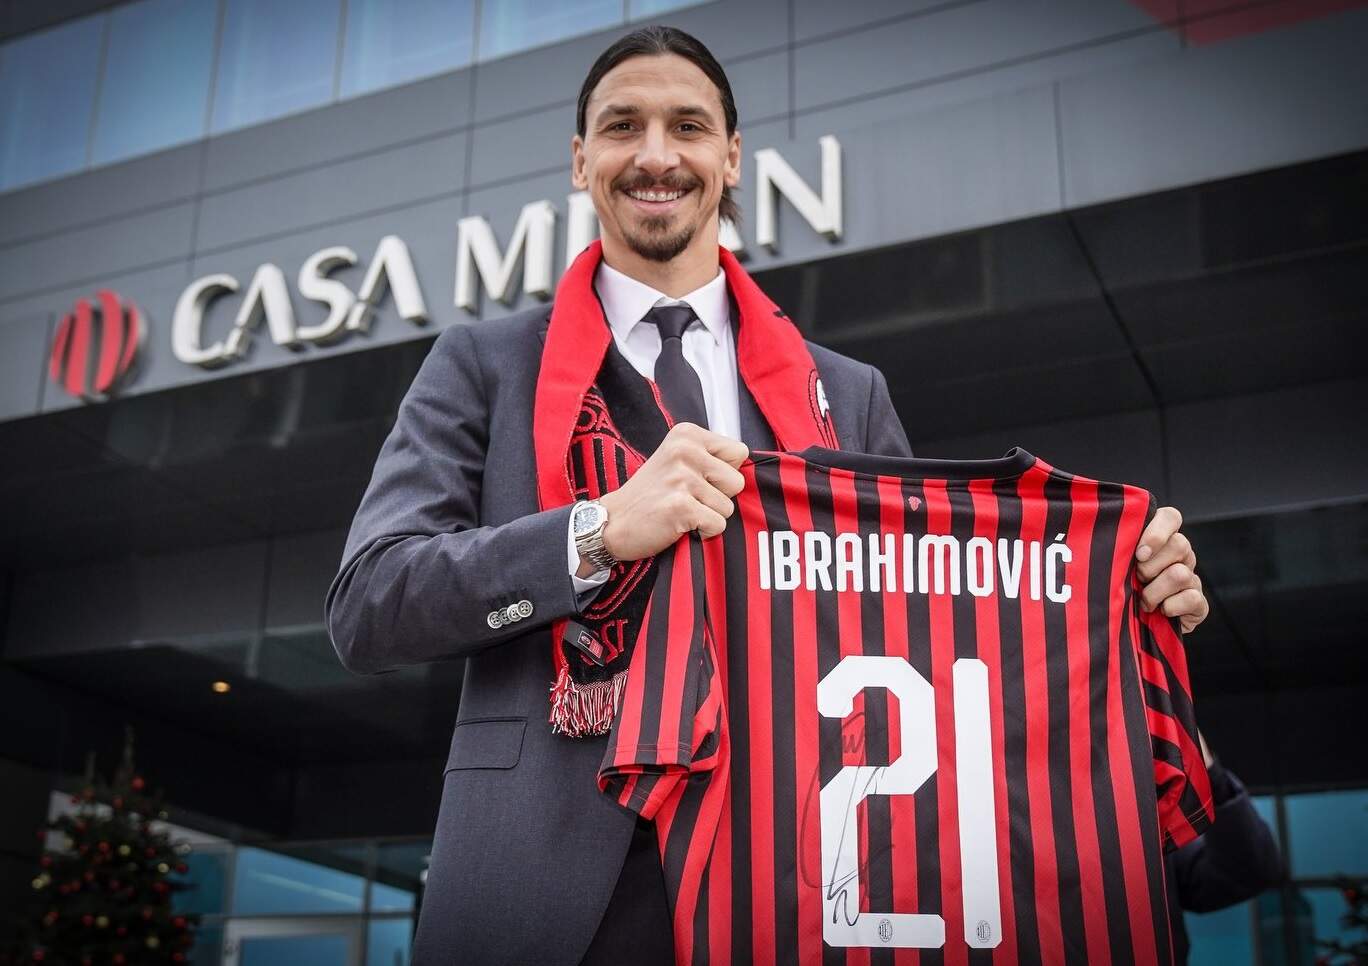 Ibrahimovic foi apresentado na Casa Milan nesta sexta-feira